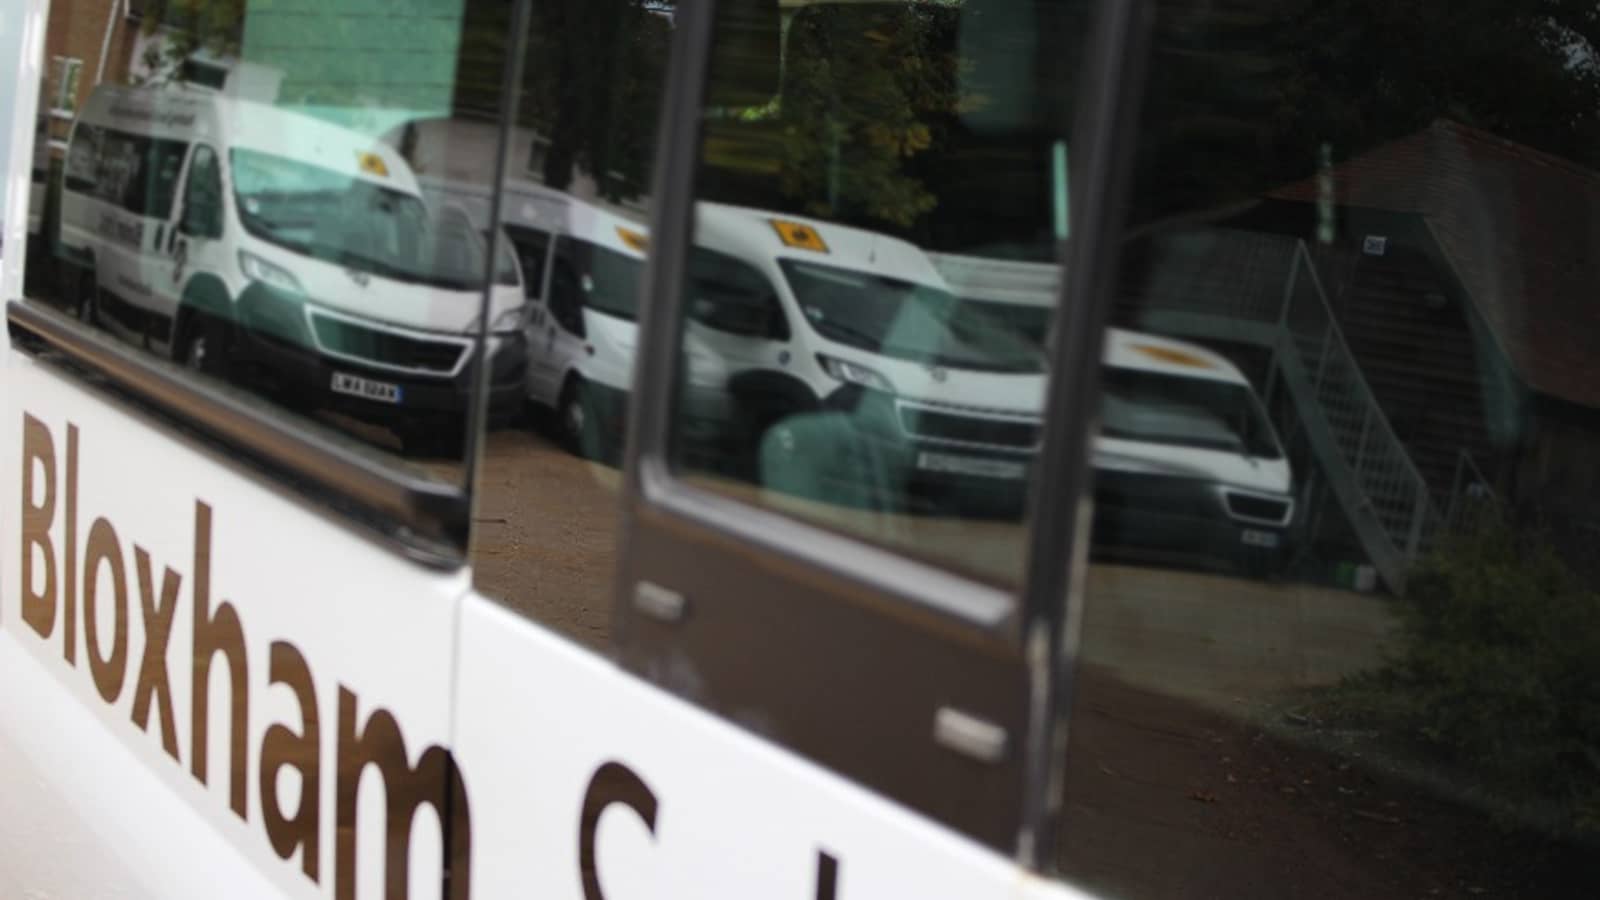 Bloxham School Minibus Service